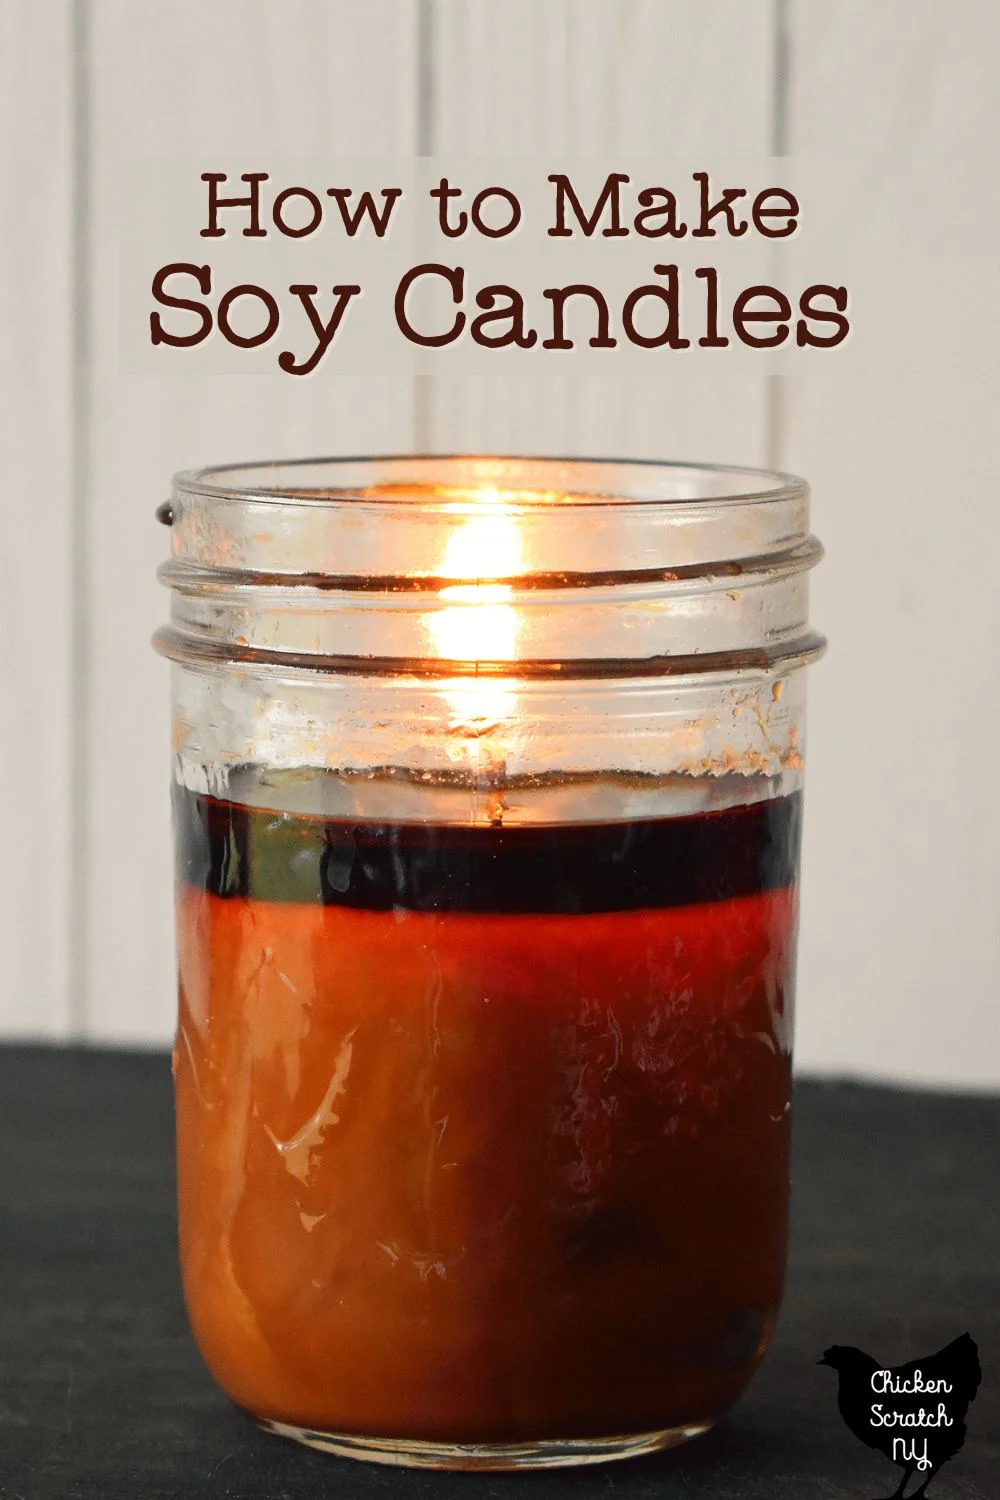 lit 8oz jelly jar candle with dark orange wax